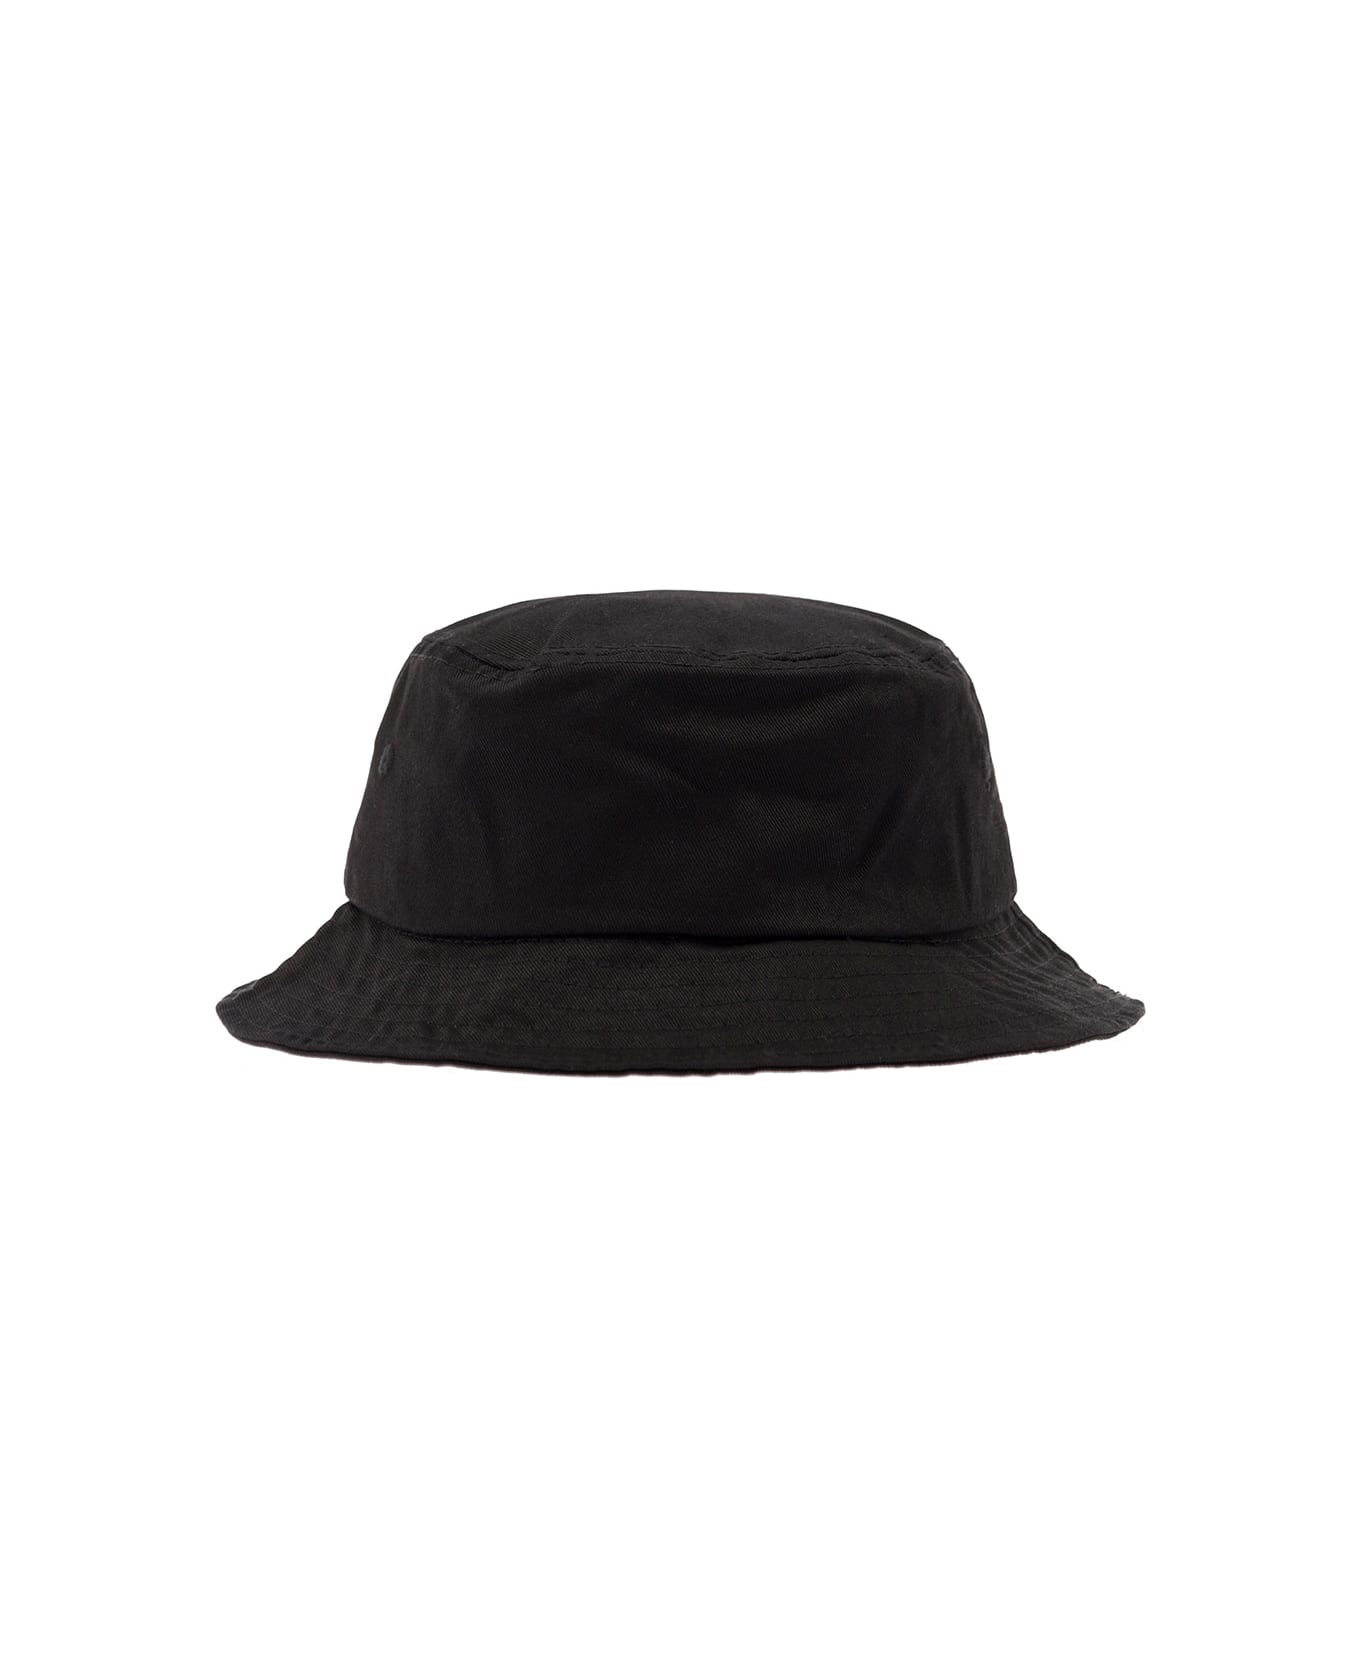 Kenzo Bucket Hat - Black